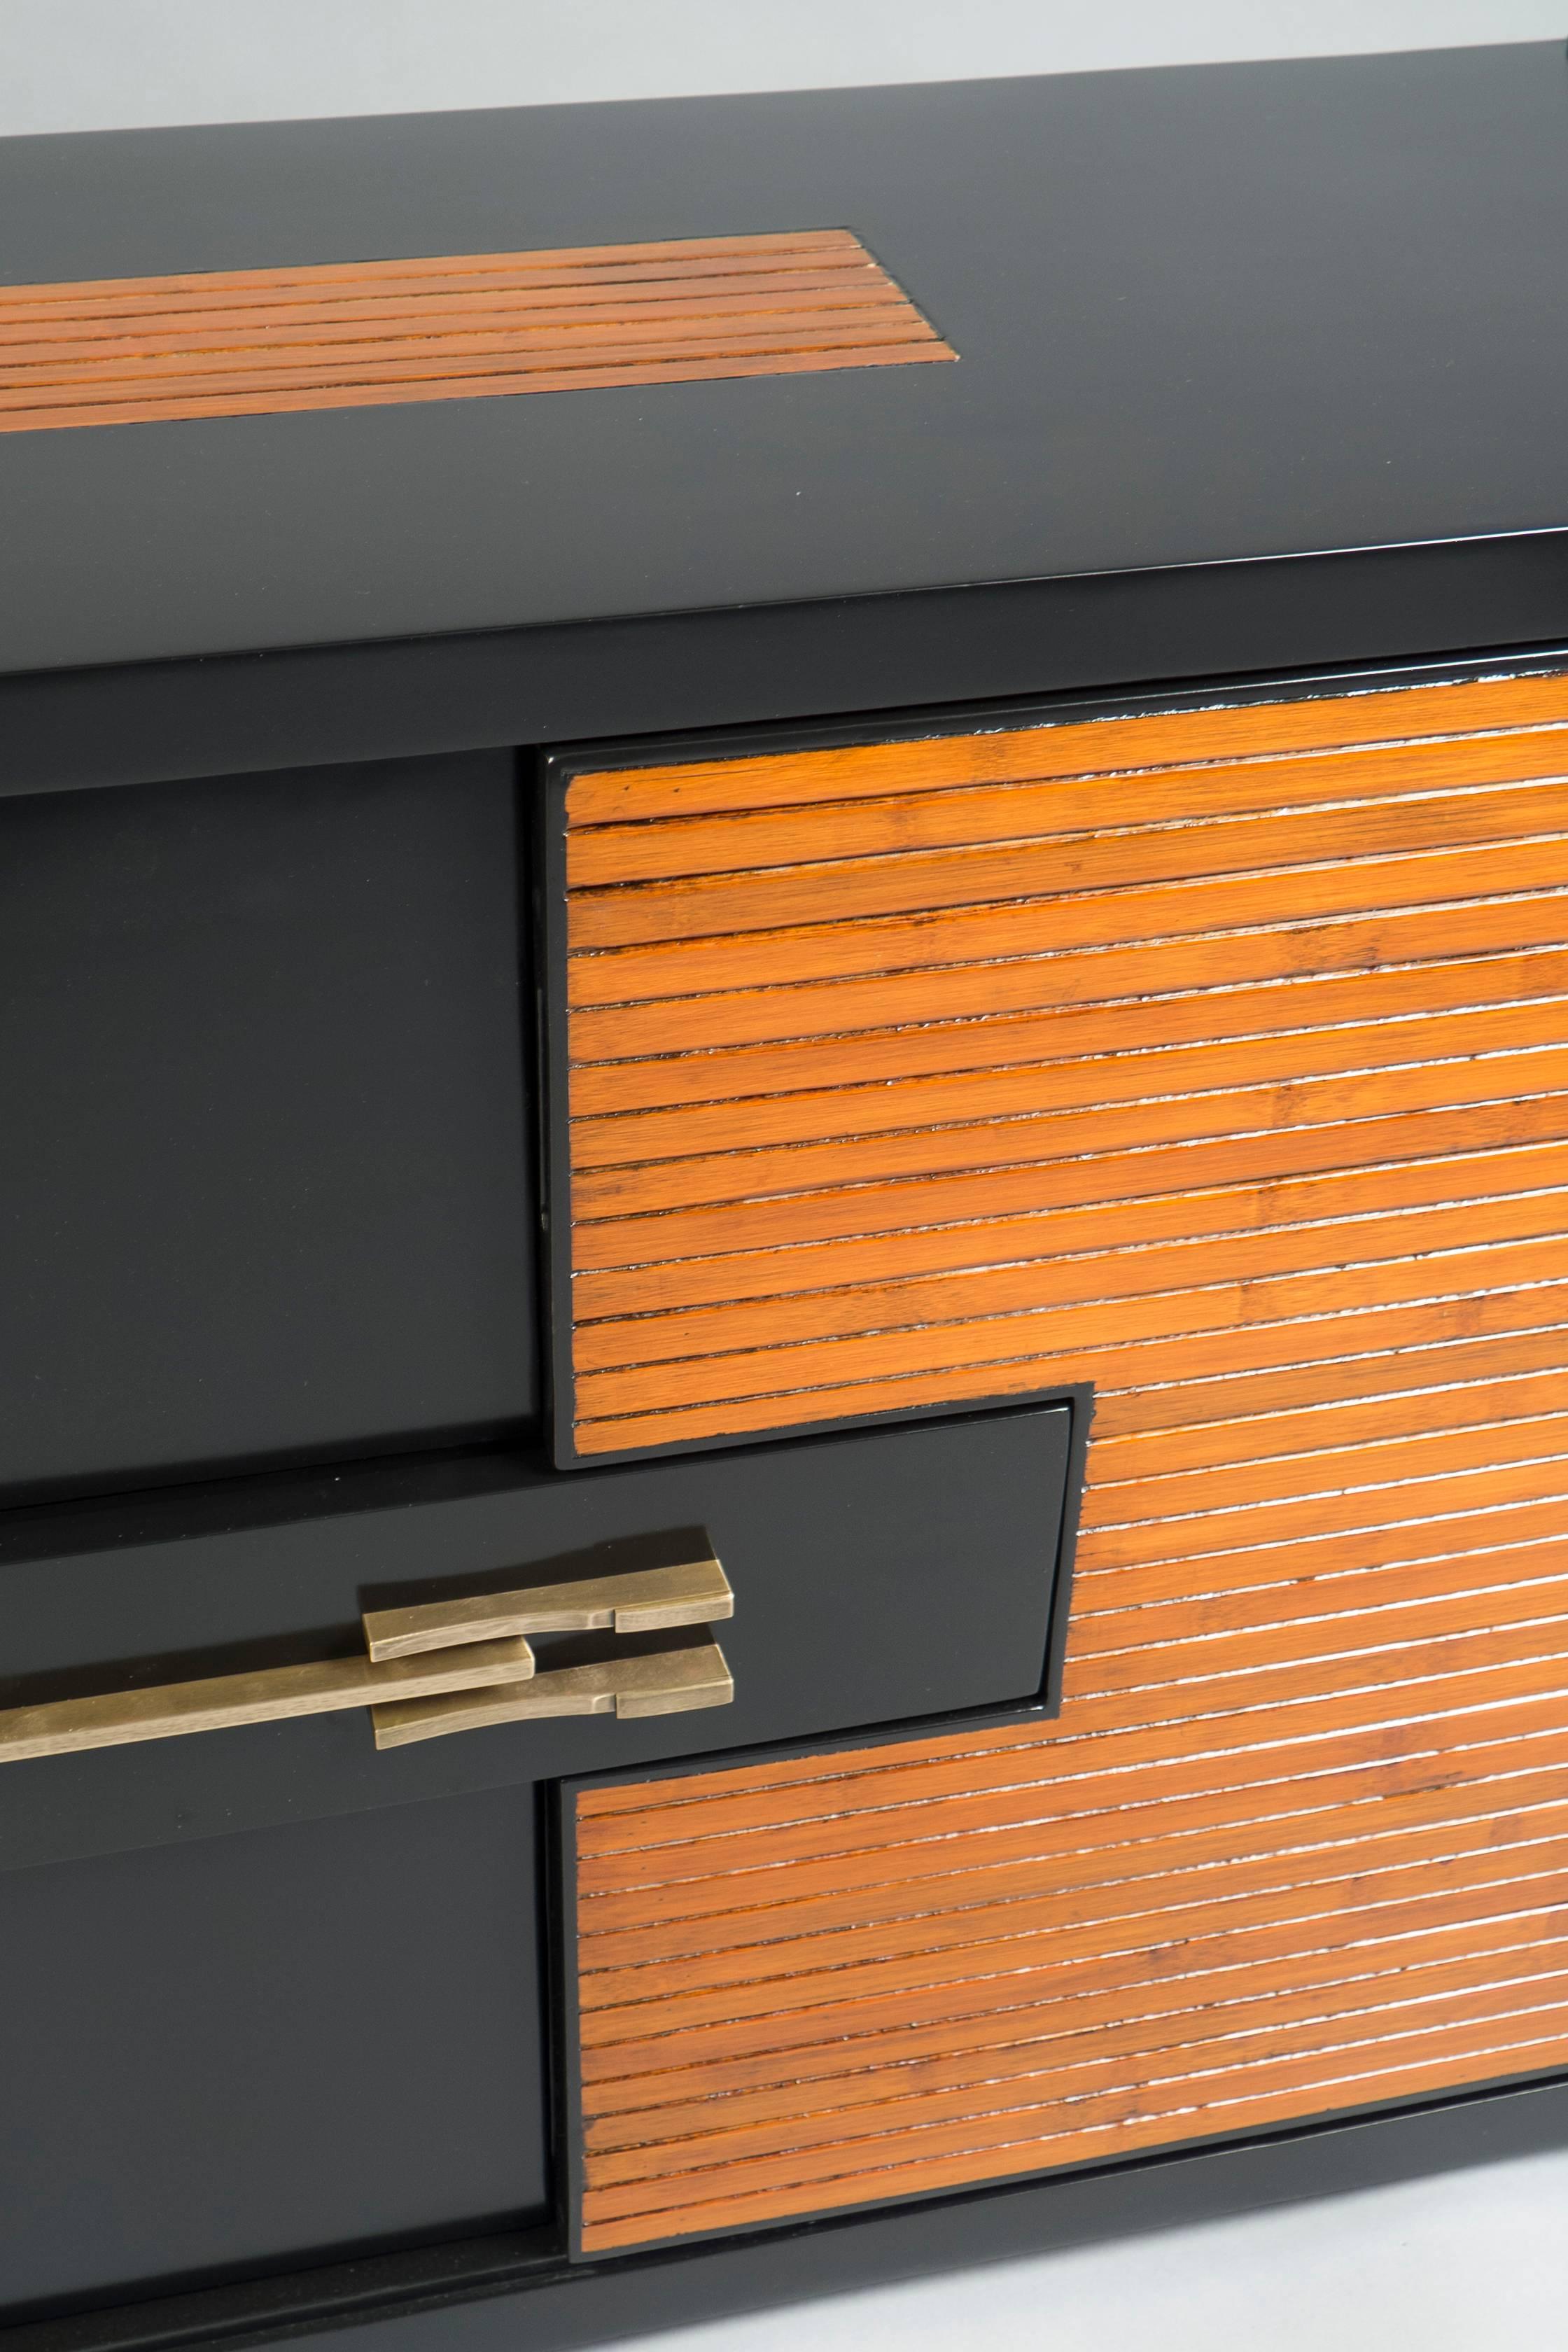 Meuble en bois fruitier laqué noir mat et teinté dans le style japonais. Les portes avant sont taillées pour imiter le bambou, avec deux portes sur les côtés, le milieu révélant deux portes noires plus petites et un tiroir central décoré